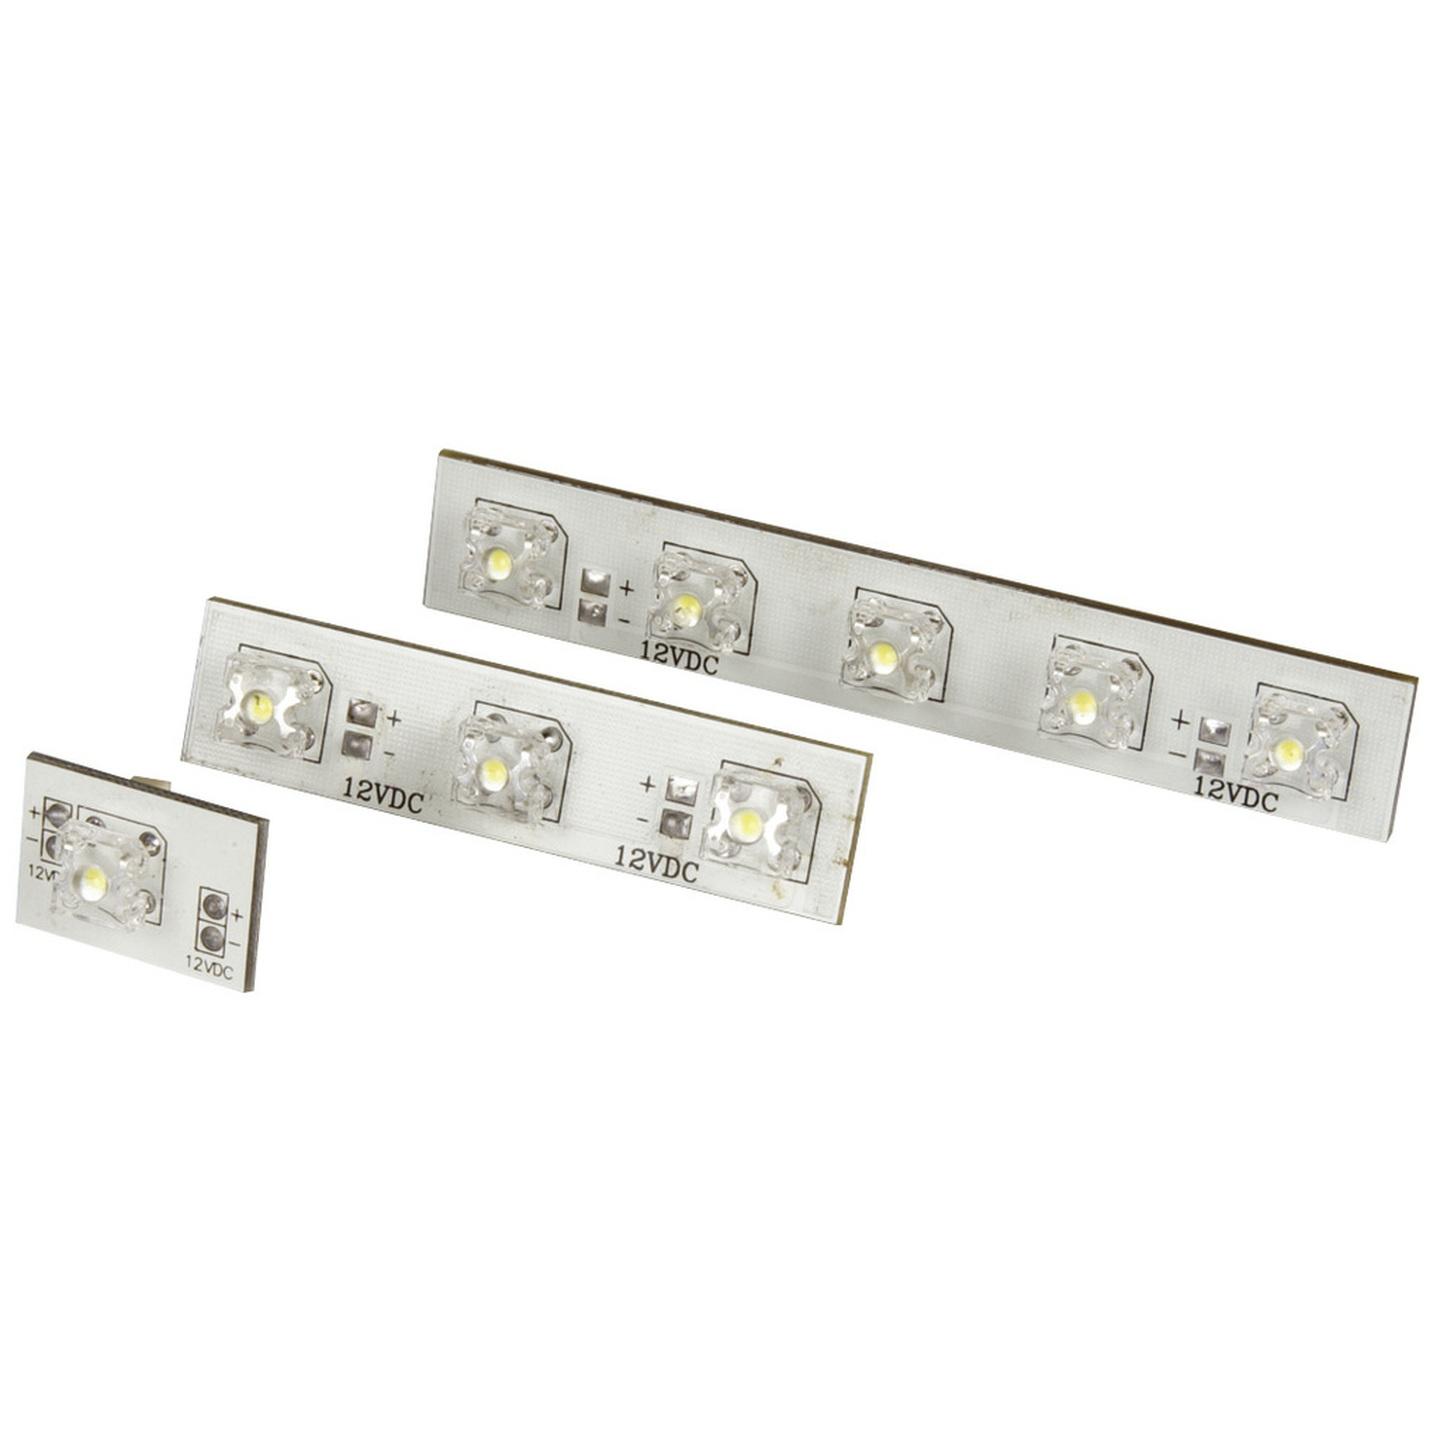 LED Light Bar Module - White 12VDC 5 LED